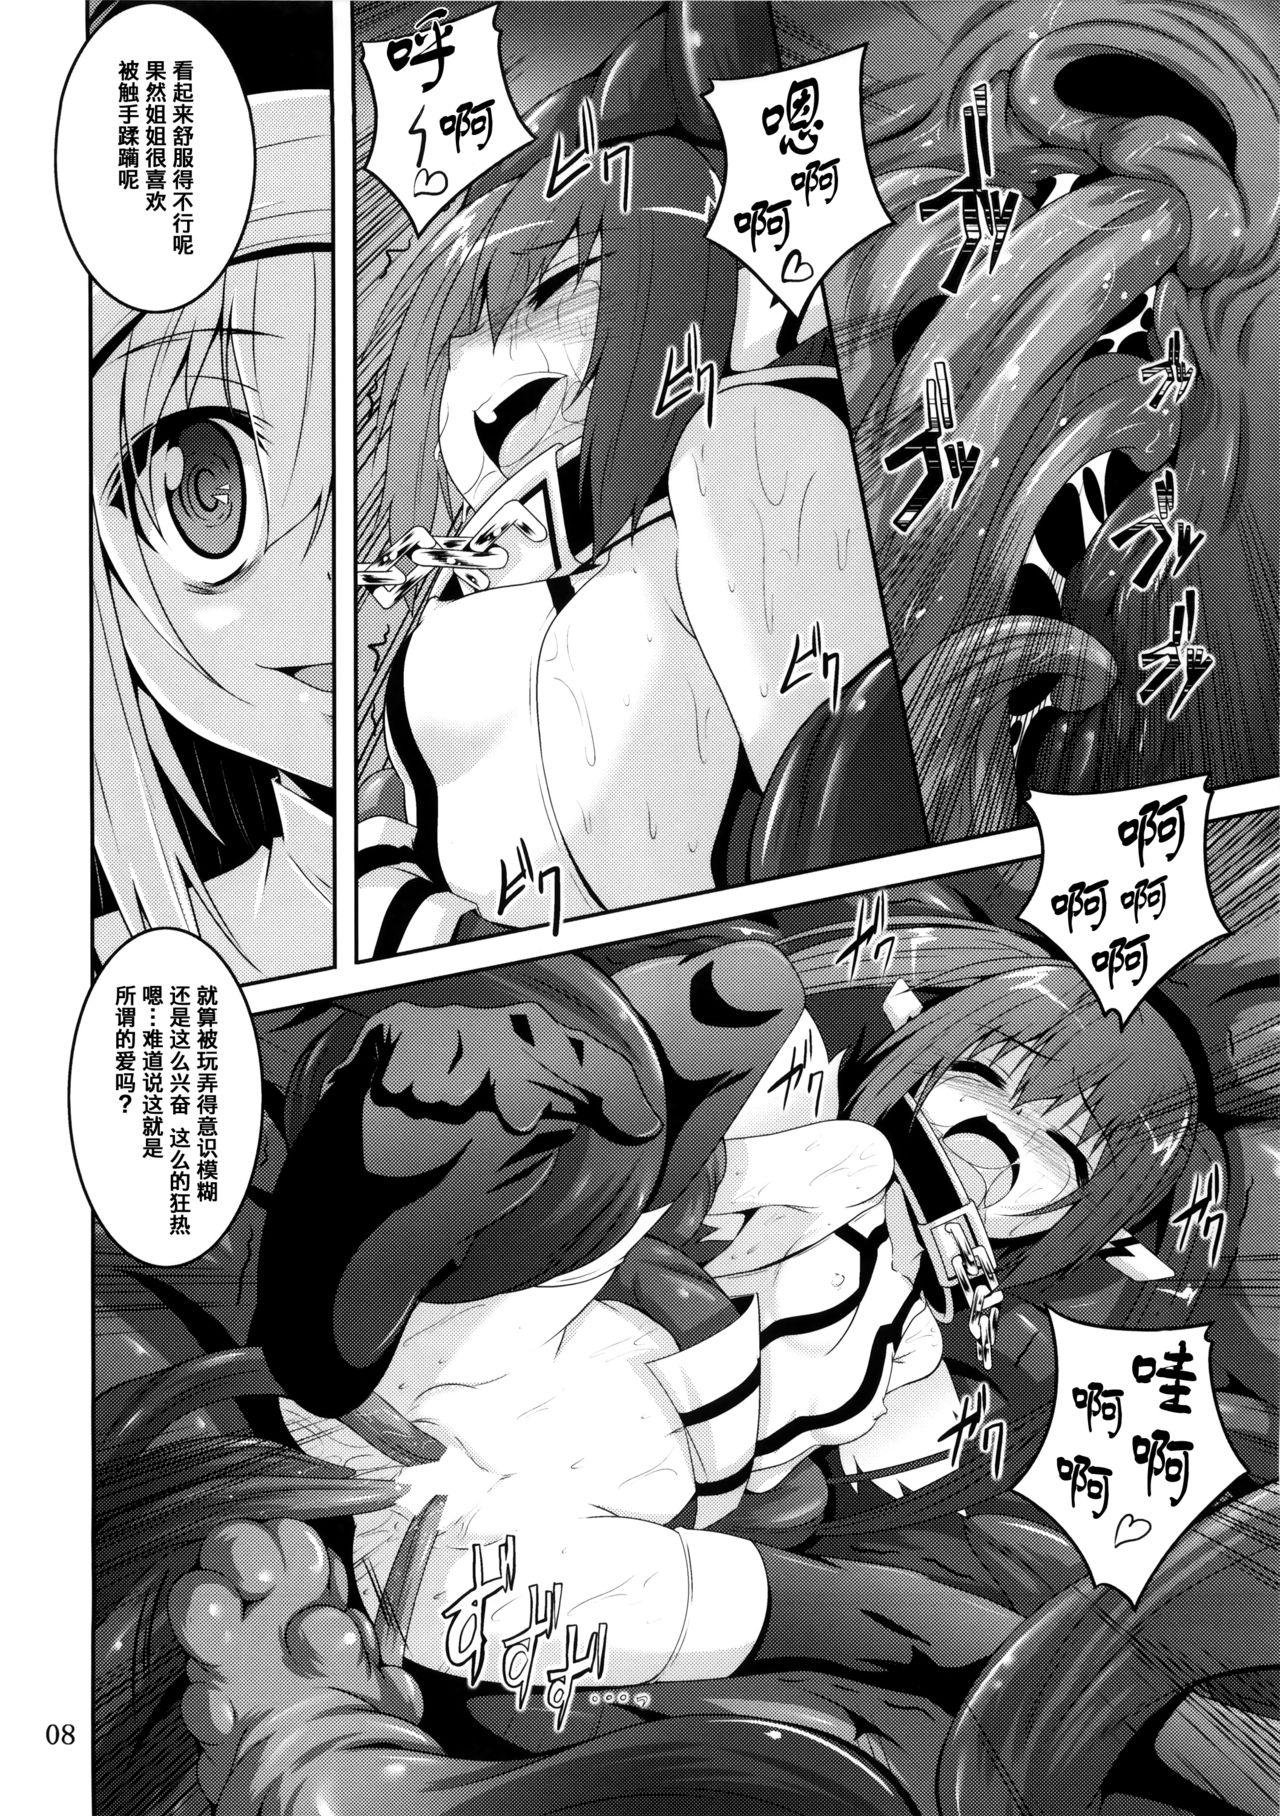 Penetration β3 - Sora no otoshimono Classy - Page 7